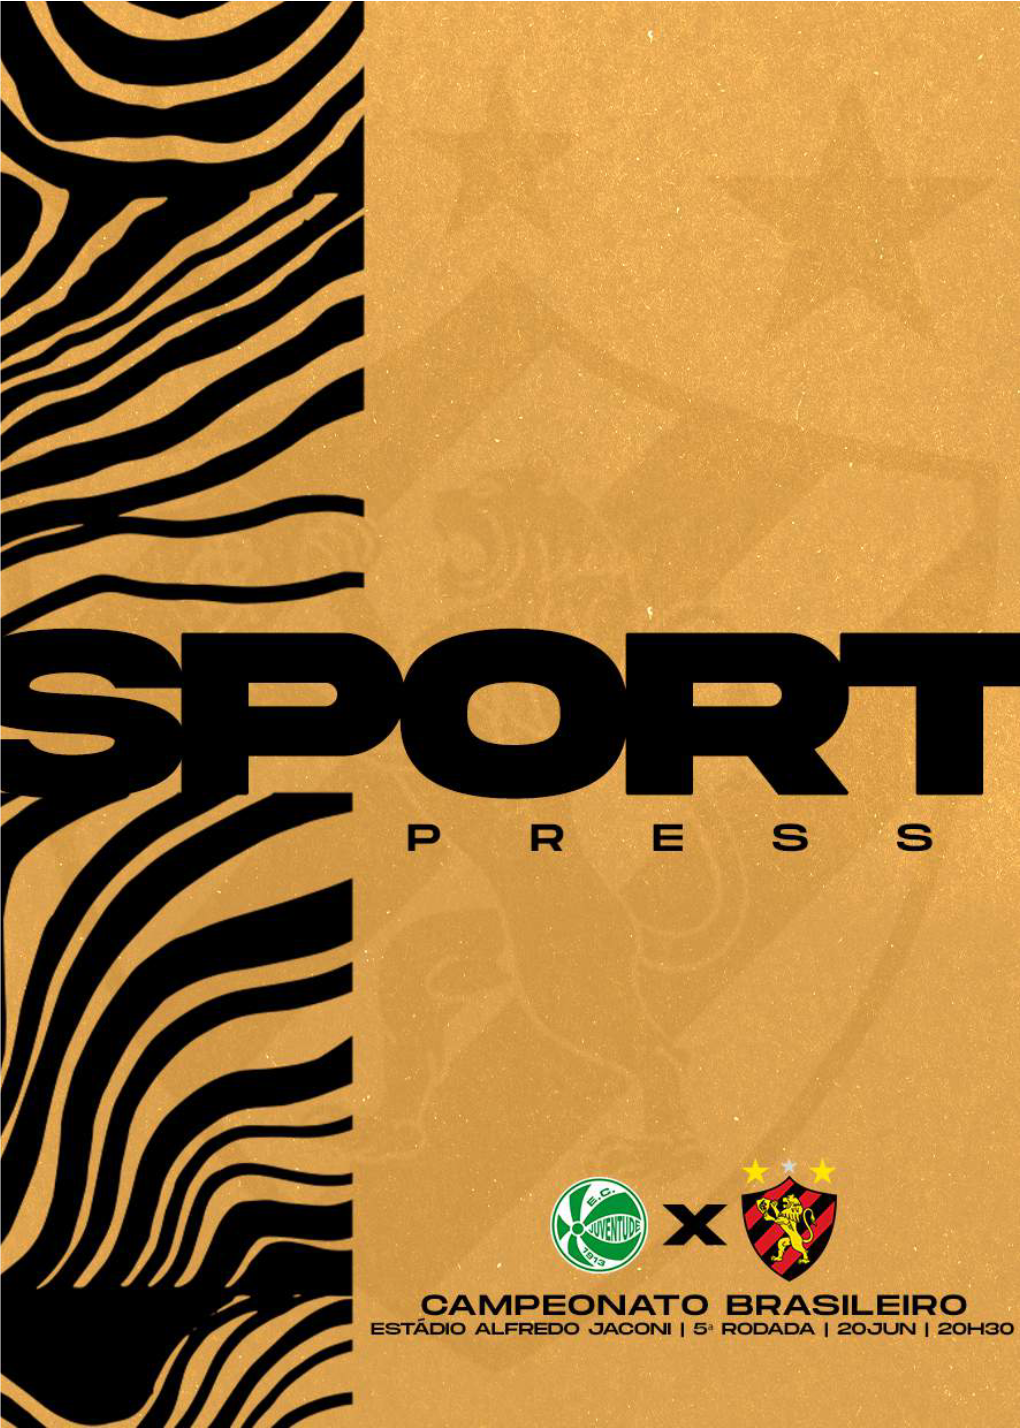 Presskit Brasileirão- Juventudexsport